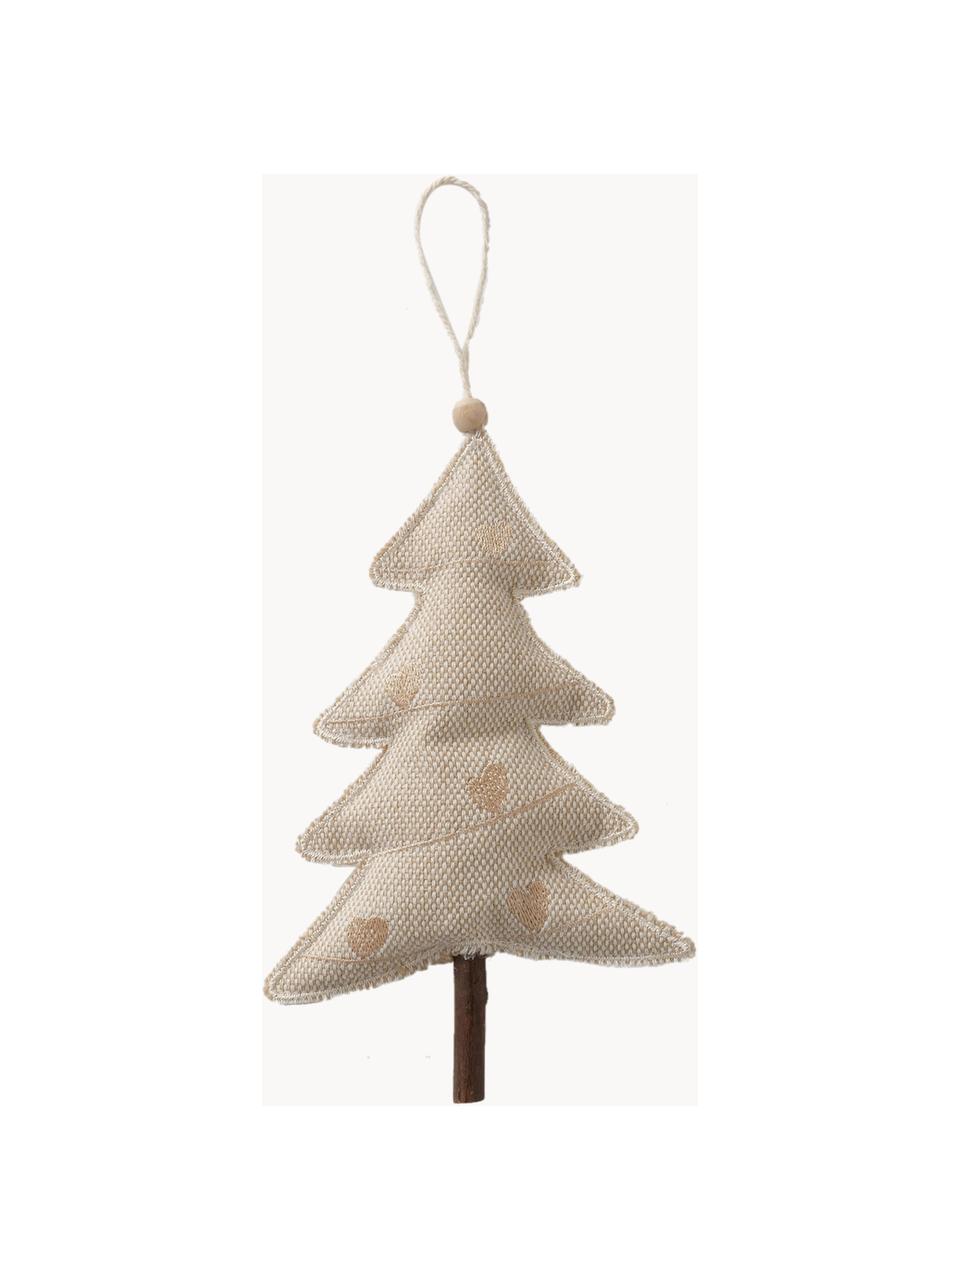 Kerstboomhangers Sivo, set van 4, Frame: schijnkastanjehout, Beige, hout, B 10 x H 22 cm